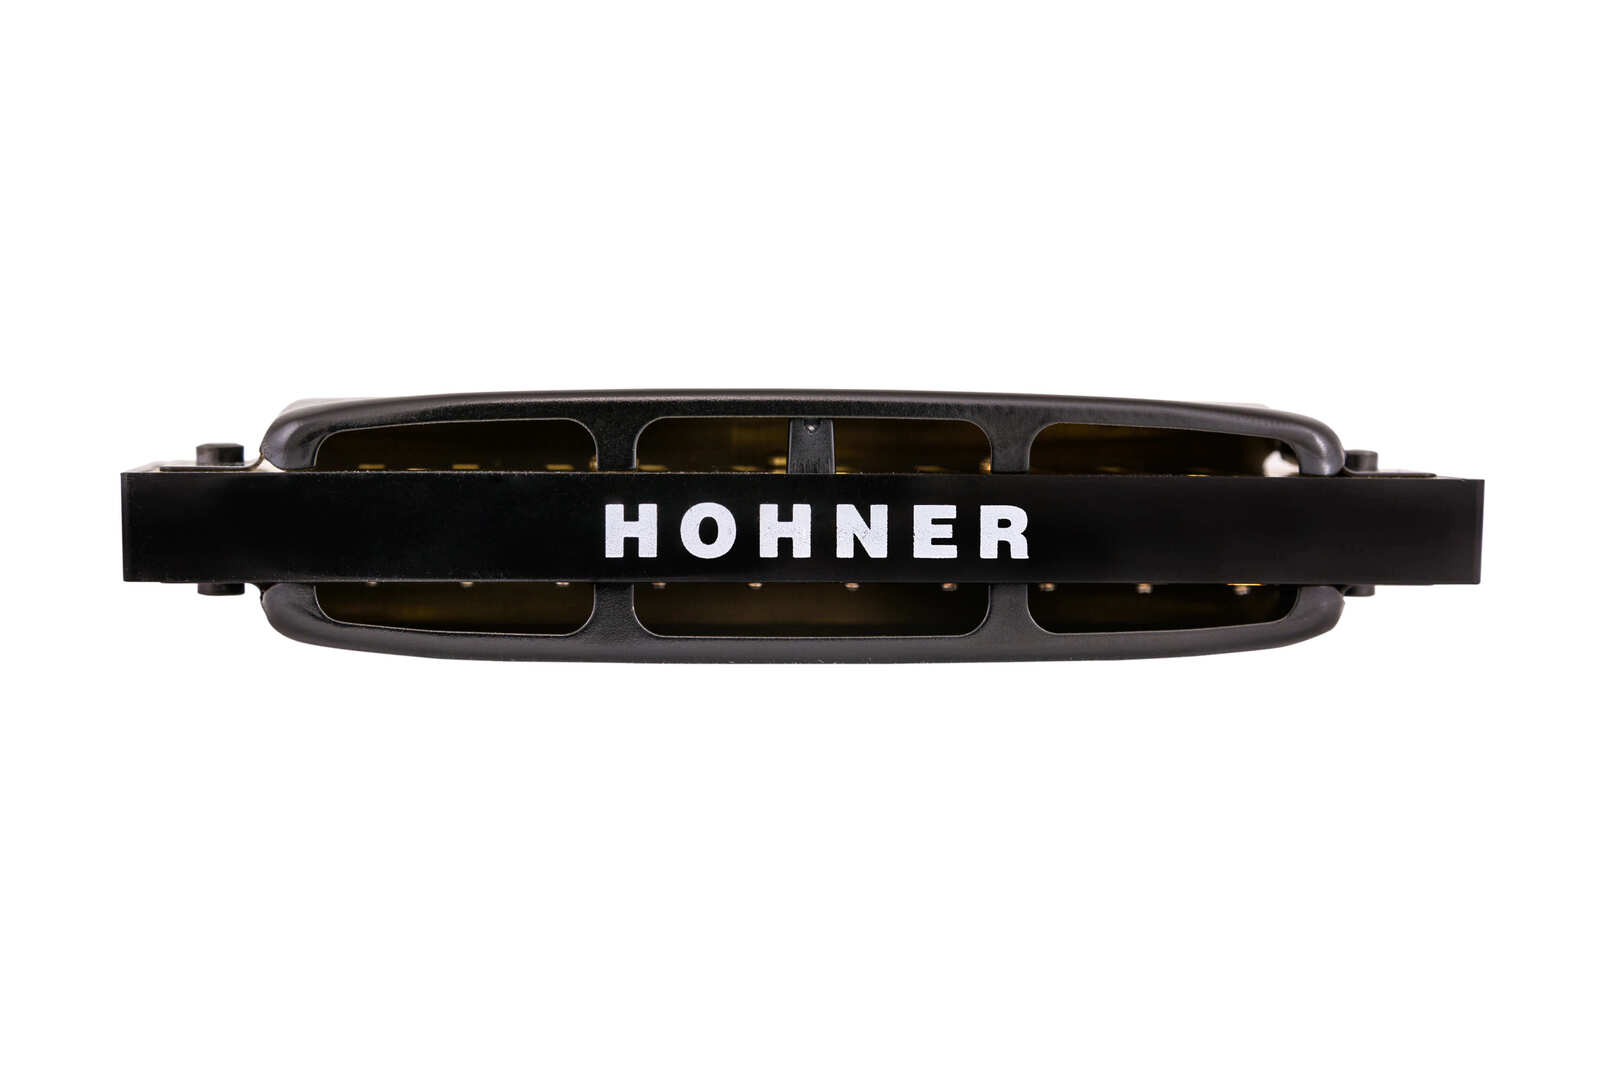 Hohner Pro Harp